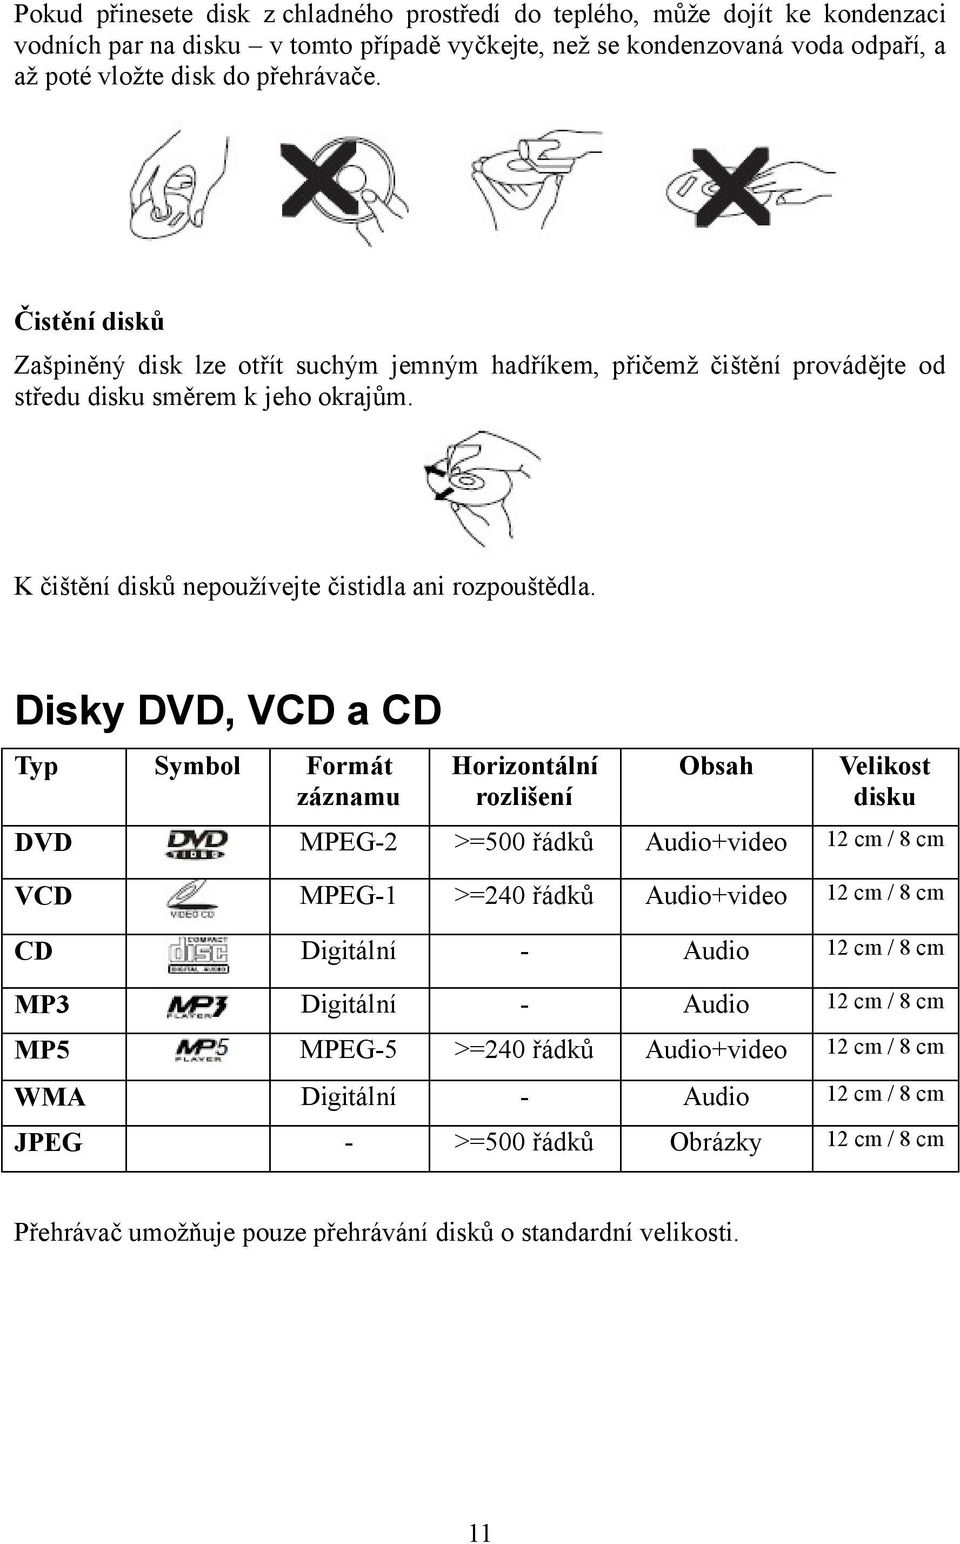 Disky DVD, VCD a CD Typ Symbol Formát záznamu Horizontální rozlišení Obsah Velikost disku DVD MPEG-2 >=500 řádků Audio+video 12 cm / 8 cm VCD MPEG-1 >=240 řádků Audio+video 12 cm / 8 cm CD Digitální